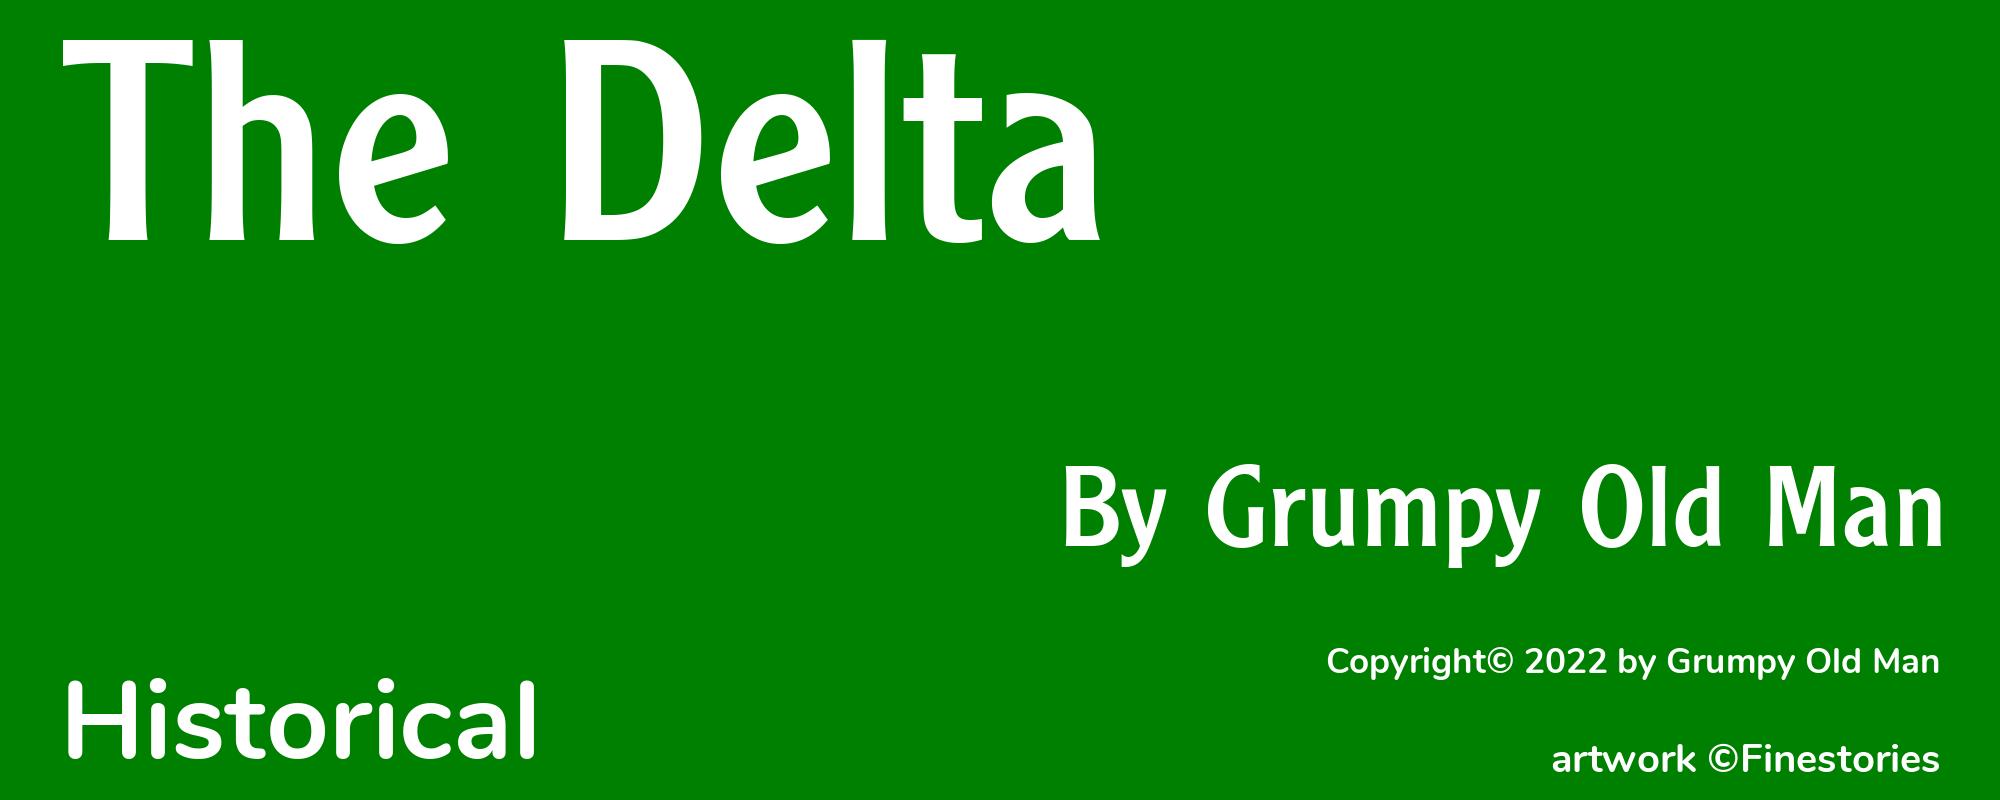 The Delta - Cover